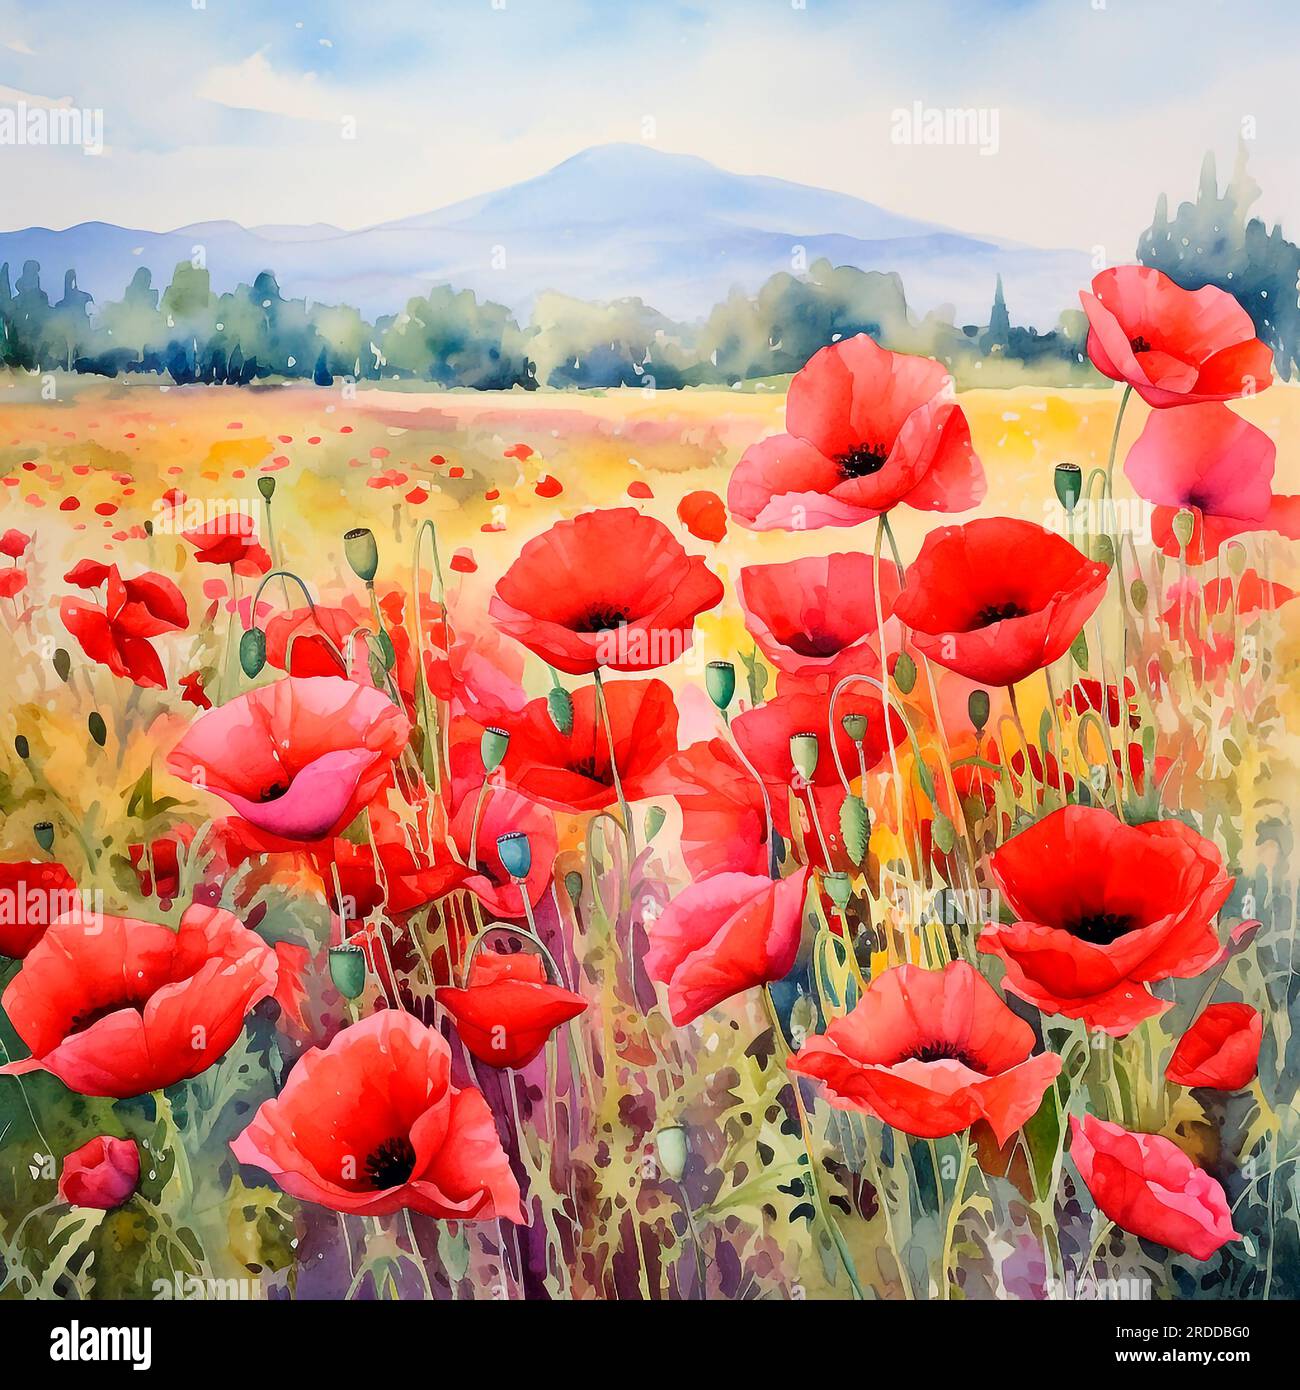 Landschaft mit farbenfrohem blühenden roten Mohnfeld in der Toskana, Italien. Stellen Sie sich ein Gemälde mit Aquarellen aus Acrylöl auf Leinwand aus Papier vor. Stockfoto